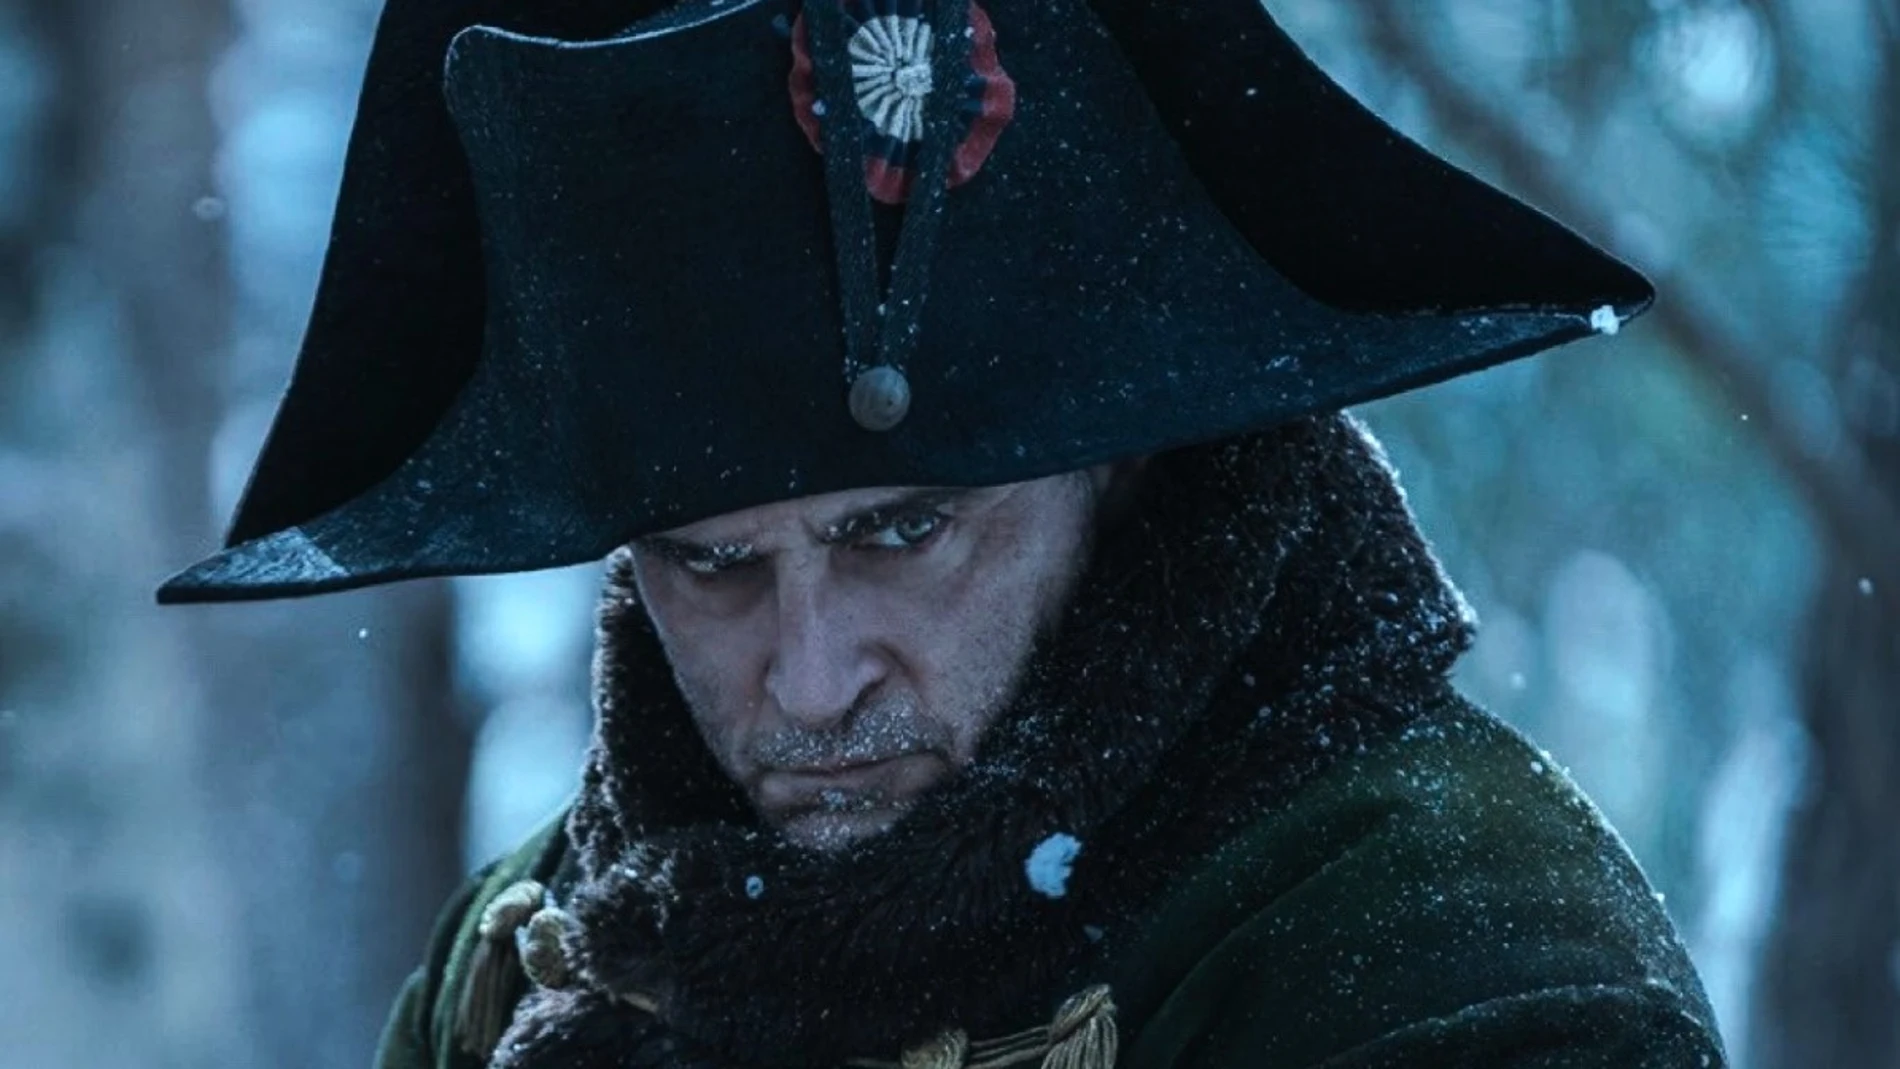 El actor Joaquin Phoenix no logra reflejar ni una sola dimensión de la complejidad del carácter de Napoleón